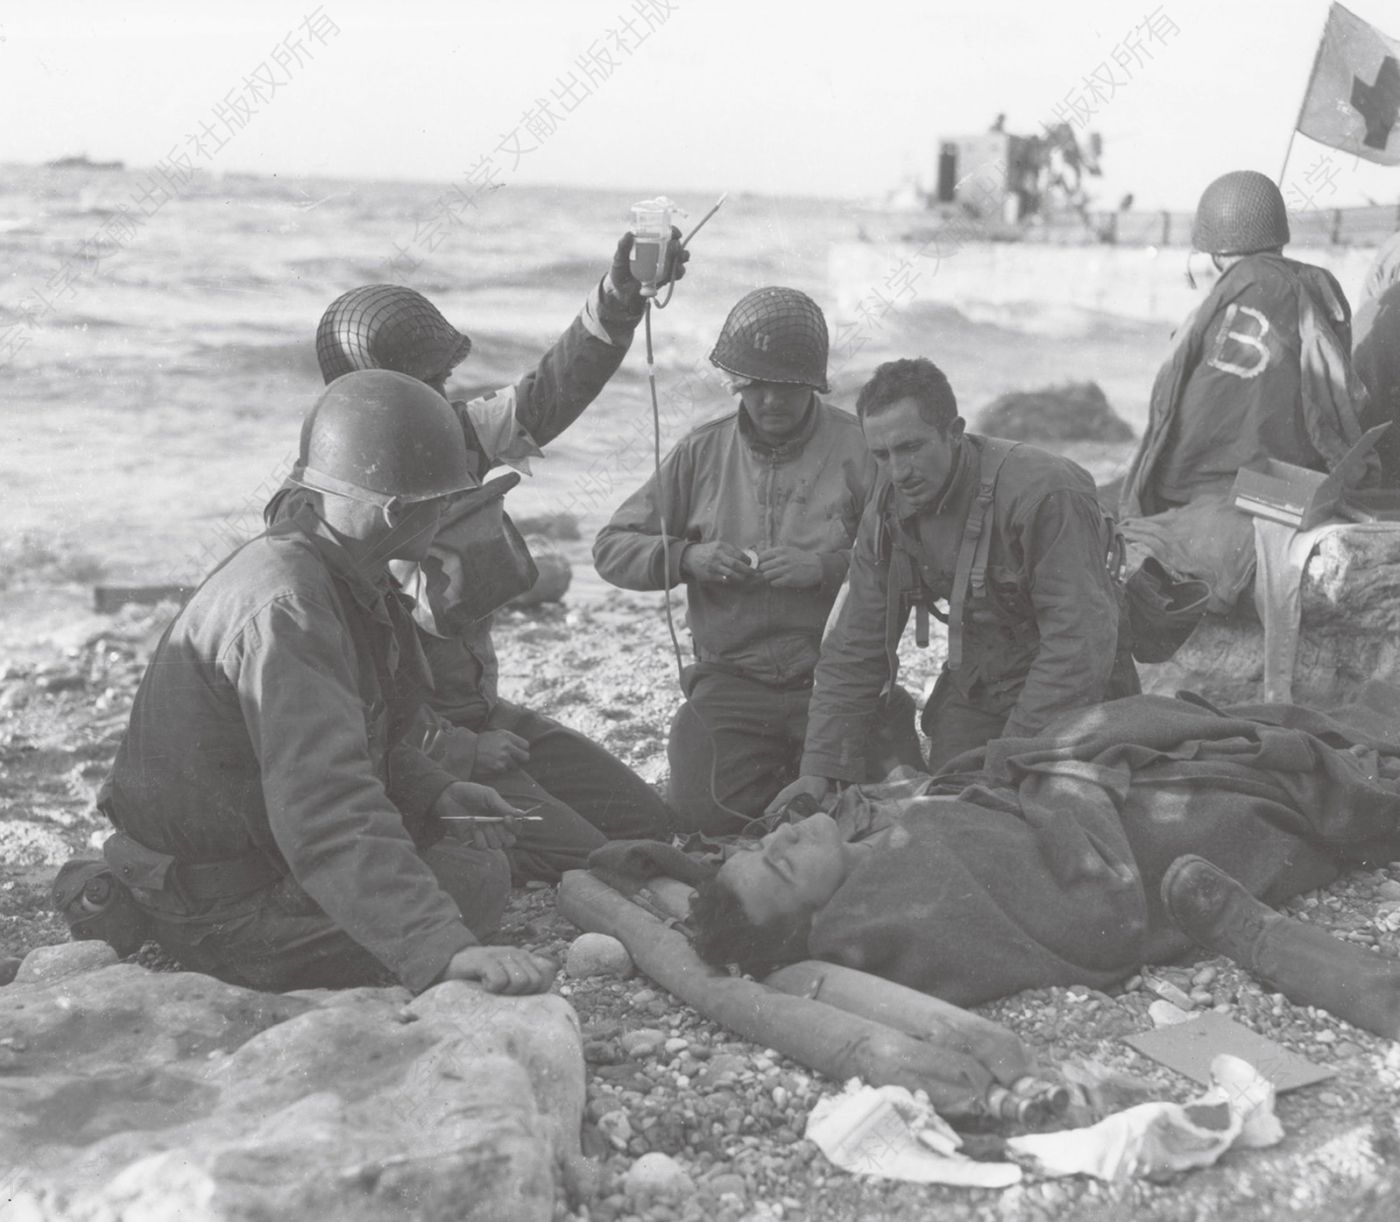 美军医护兵在奥马哈海滩给受伤士兵输血